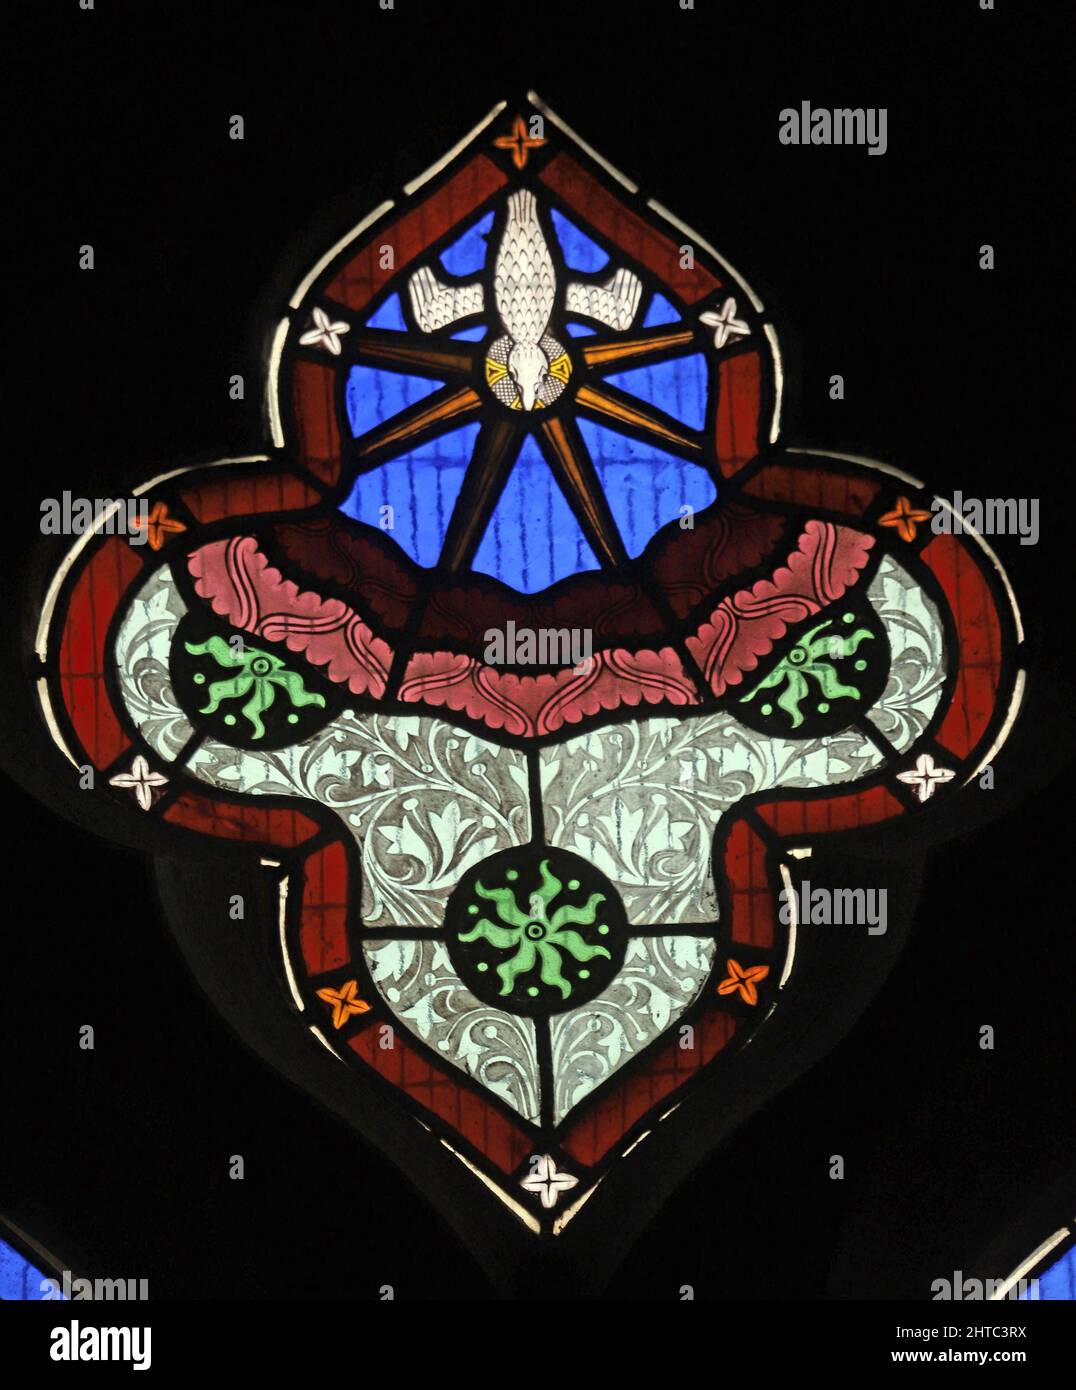 Buntglasfenster von Frederick Preedy, das die Herabkunft des Heiligen Geistes darstellt. St. Lawrence Church, Stretton Grandison, Herefordshire Stockfoto